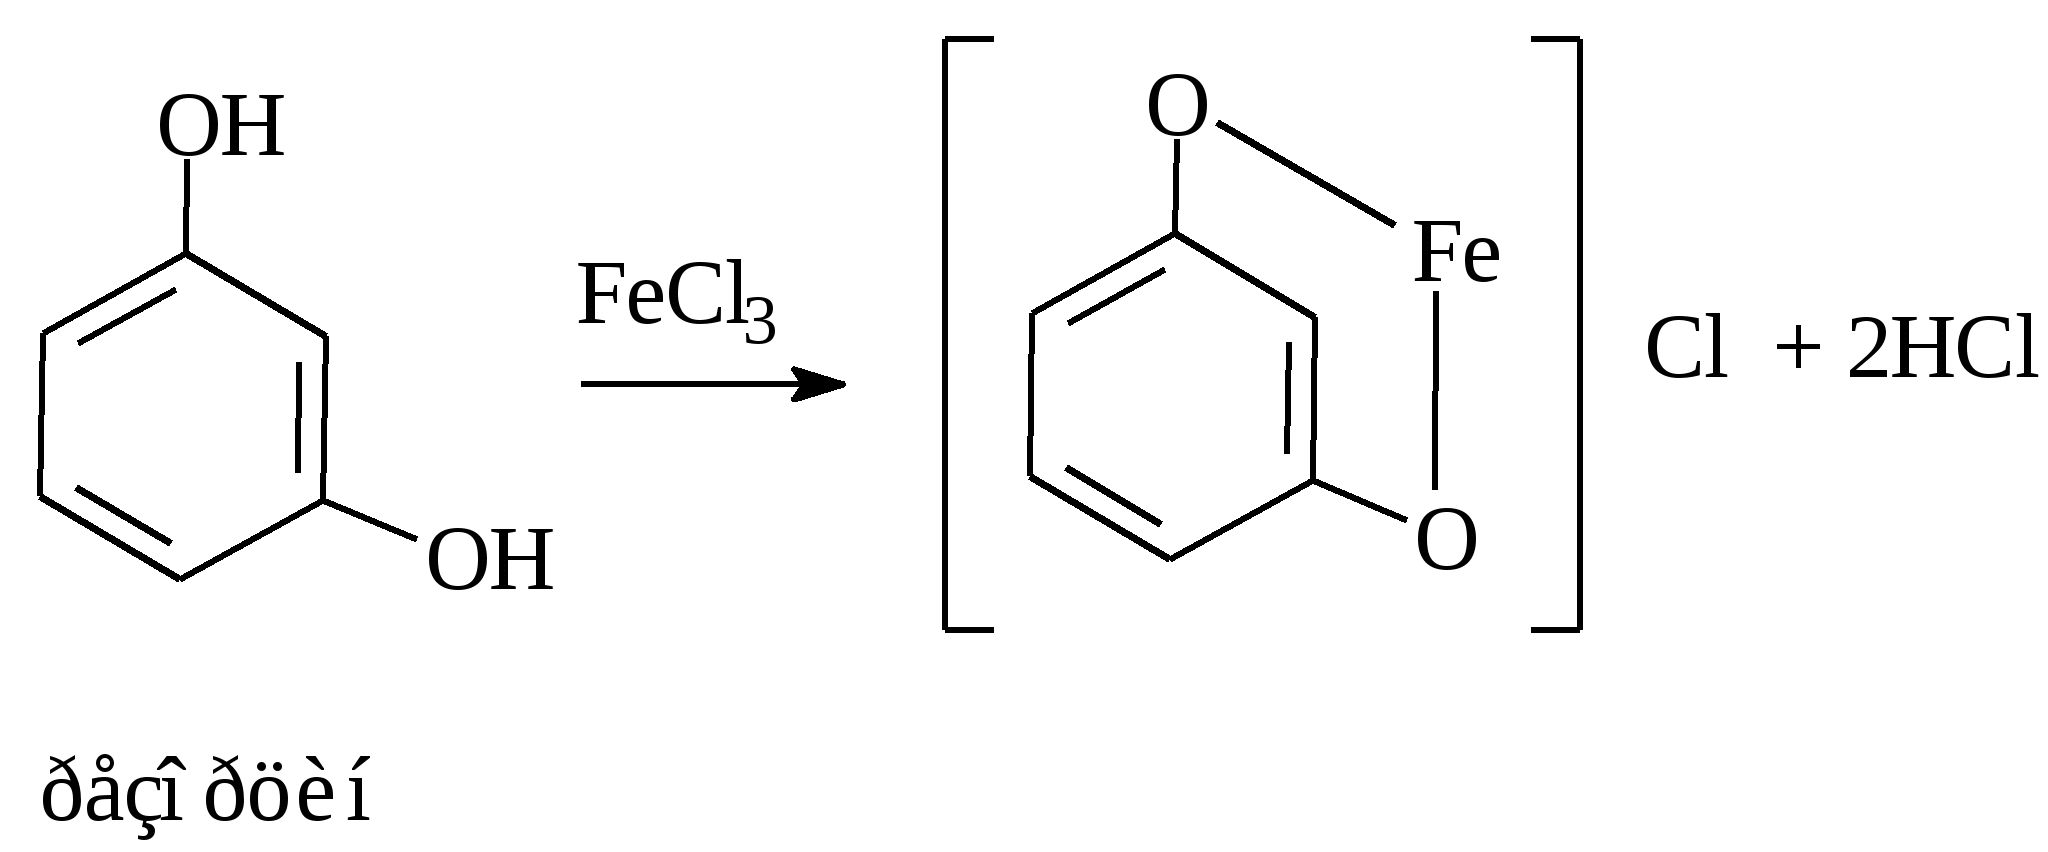 Резорцин с хлоридом железа 3. Фенольный гидроксил формула. Резорцин с хлоридом железа. Реакции на фенольный гидроксил. Фенол и хлорид железа реакция